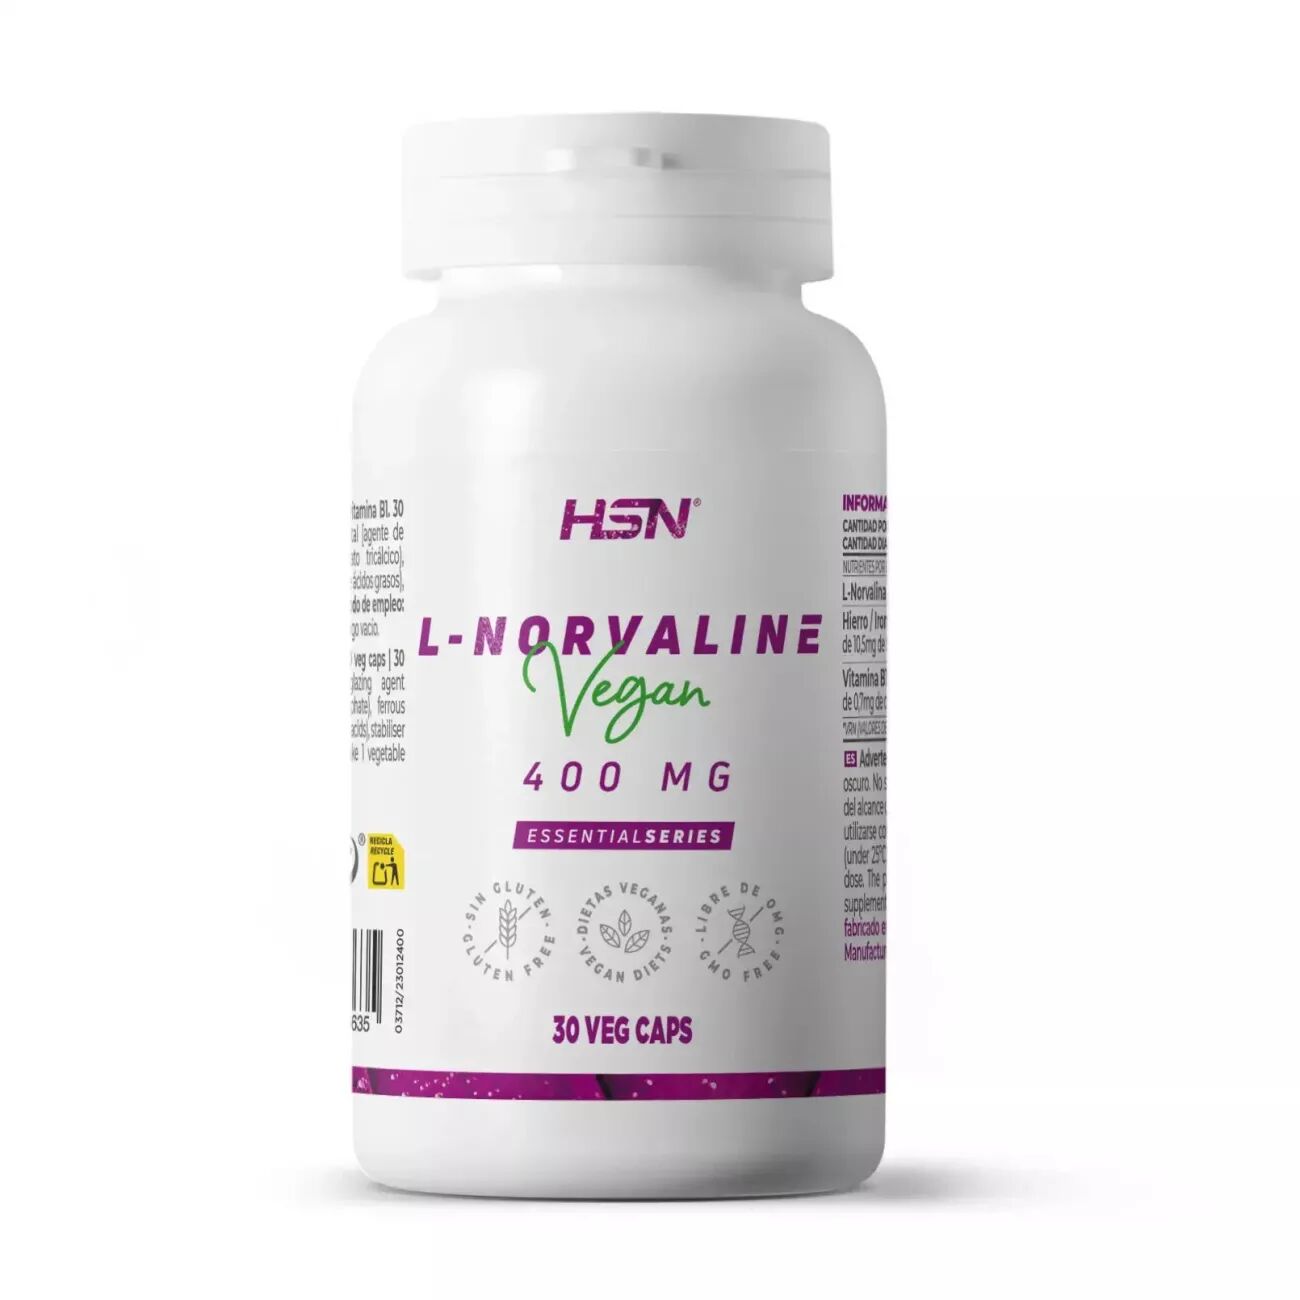 HSN L-norvalina 400mg - 30 veg caps